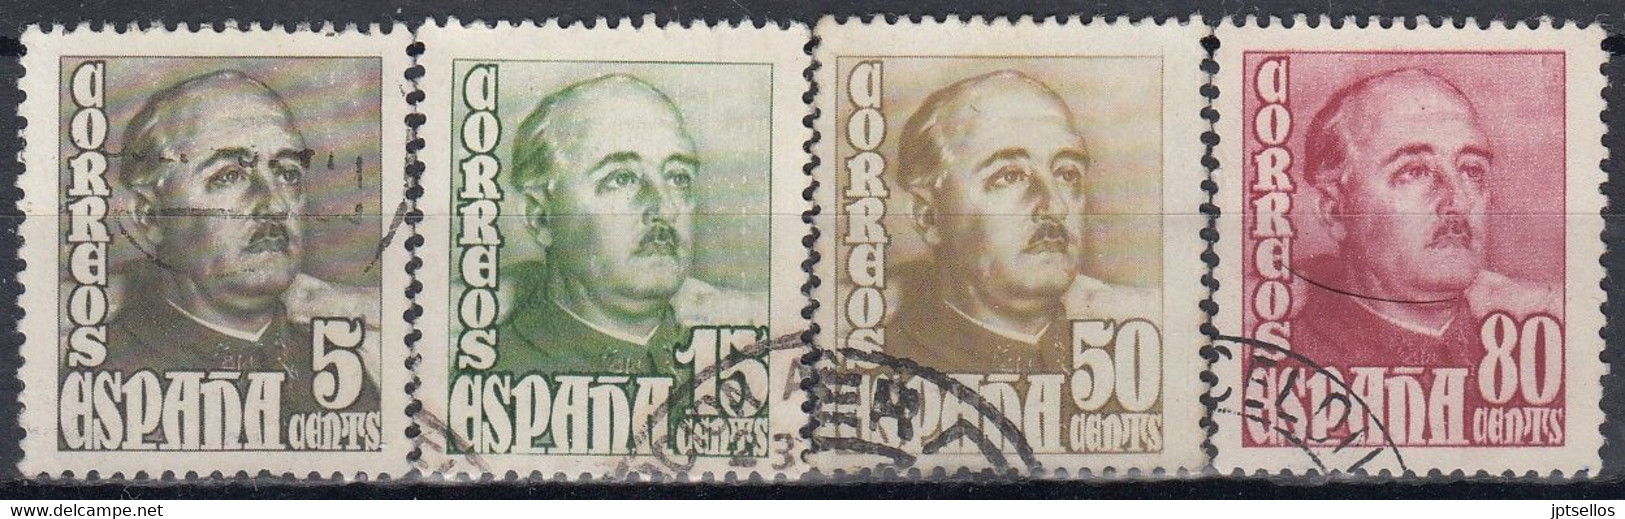 ESPAÑA 1948-1954 Nº 1020/23 USADO (REF. 02) - Used Stamps